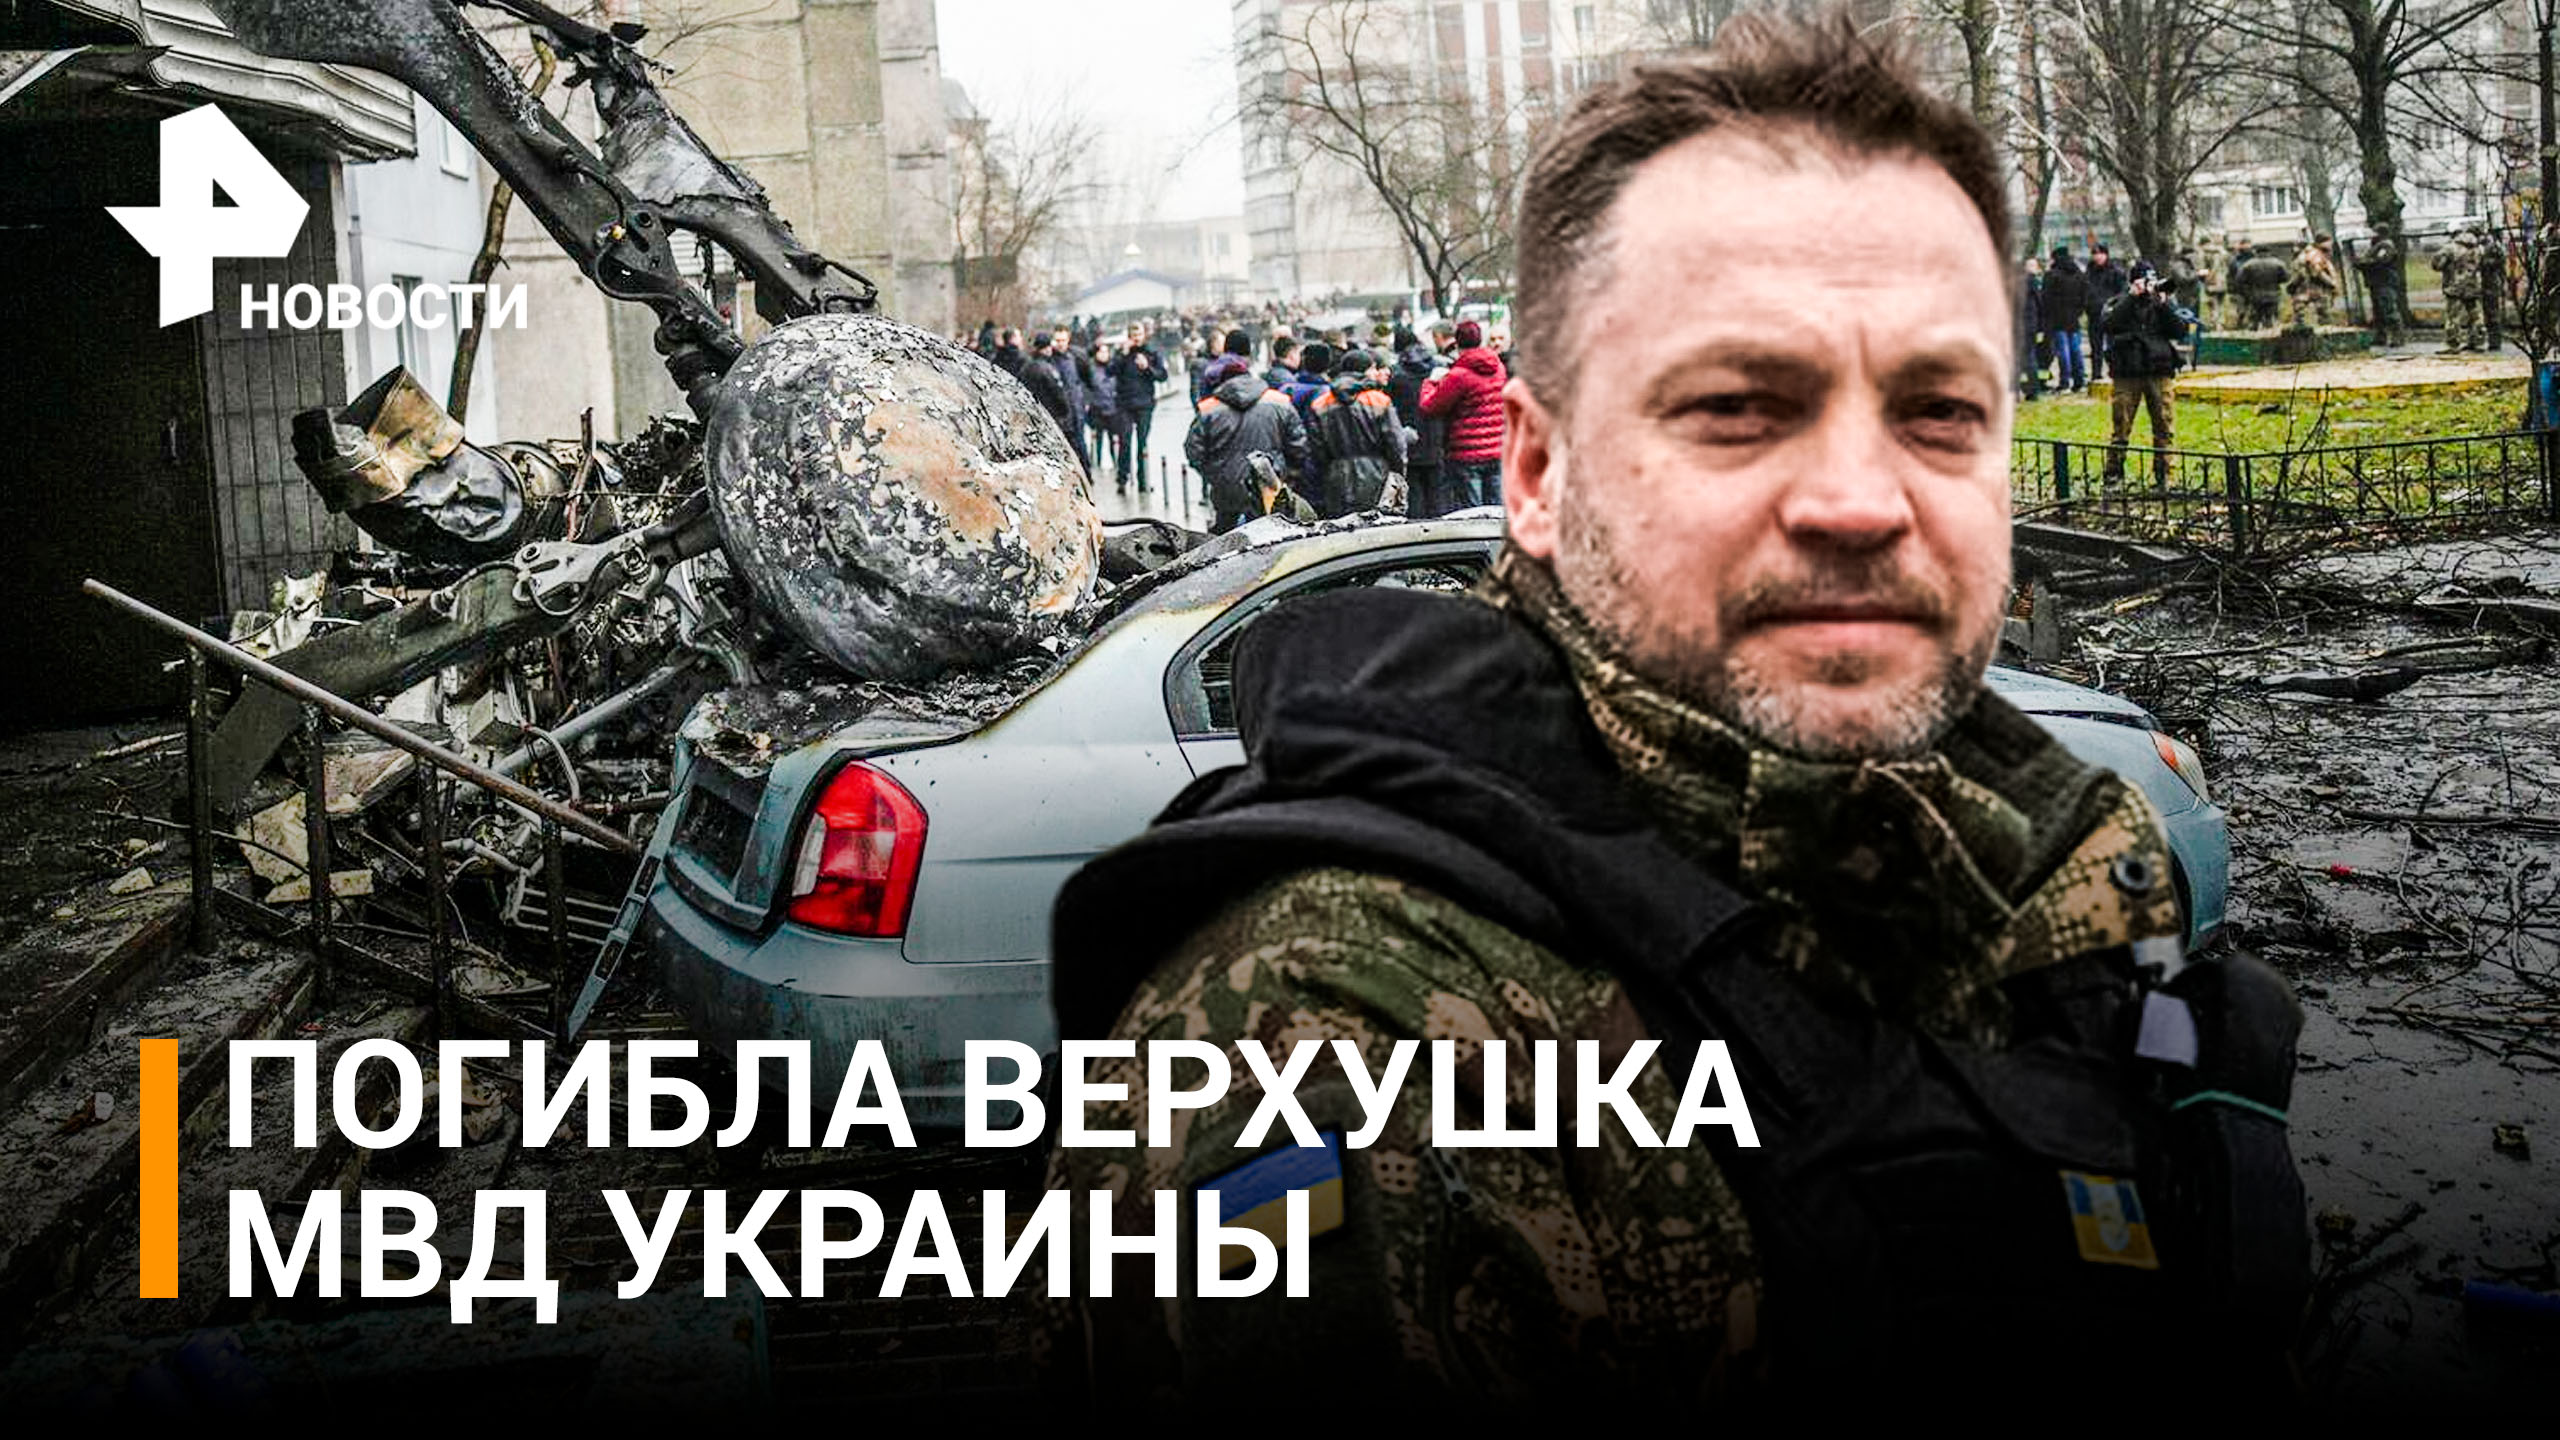 Глава МВД Украины погиб при крушении вертолета под Киевом / РЕН Новости